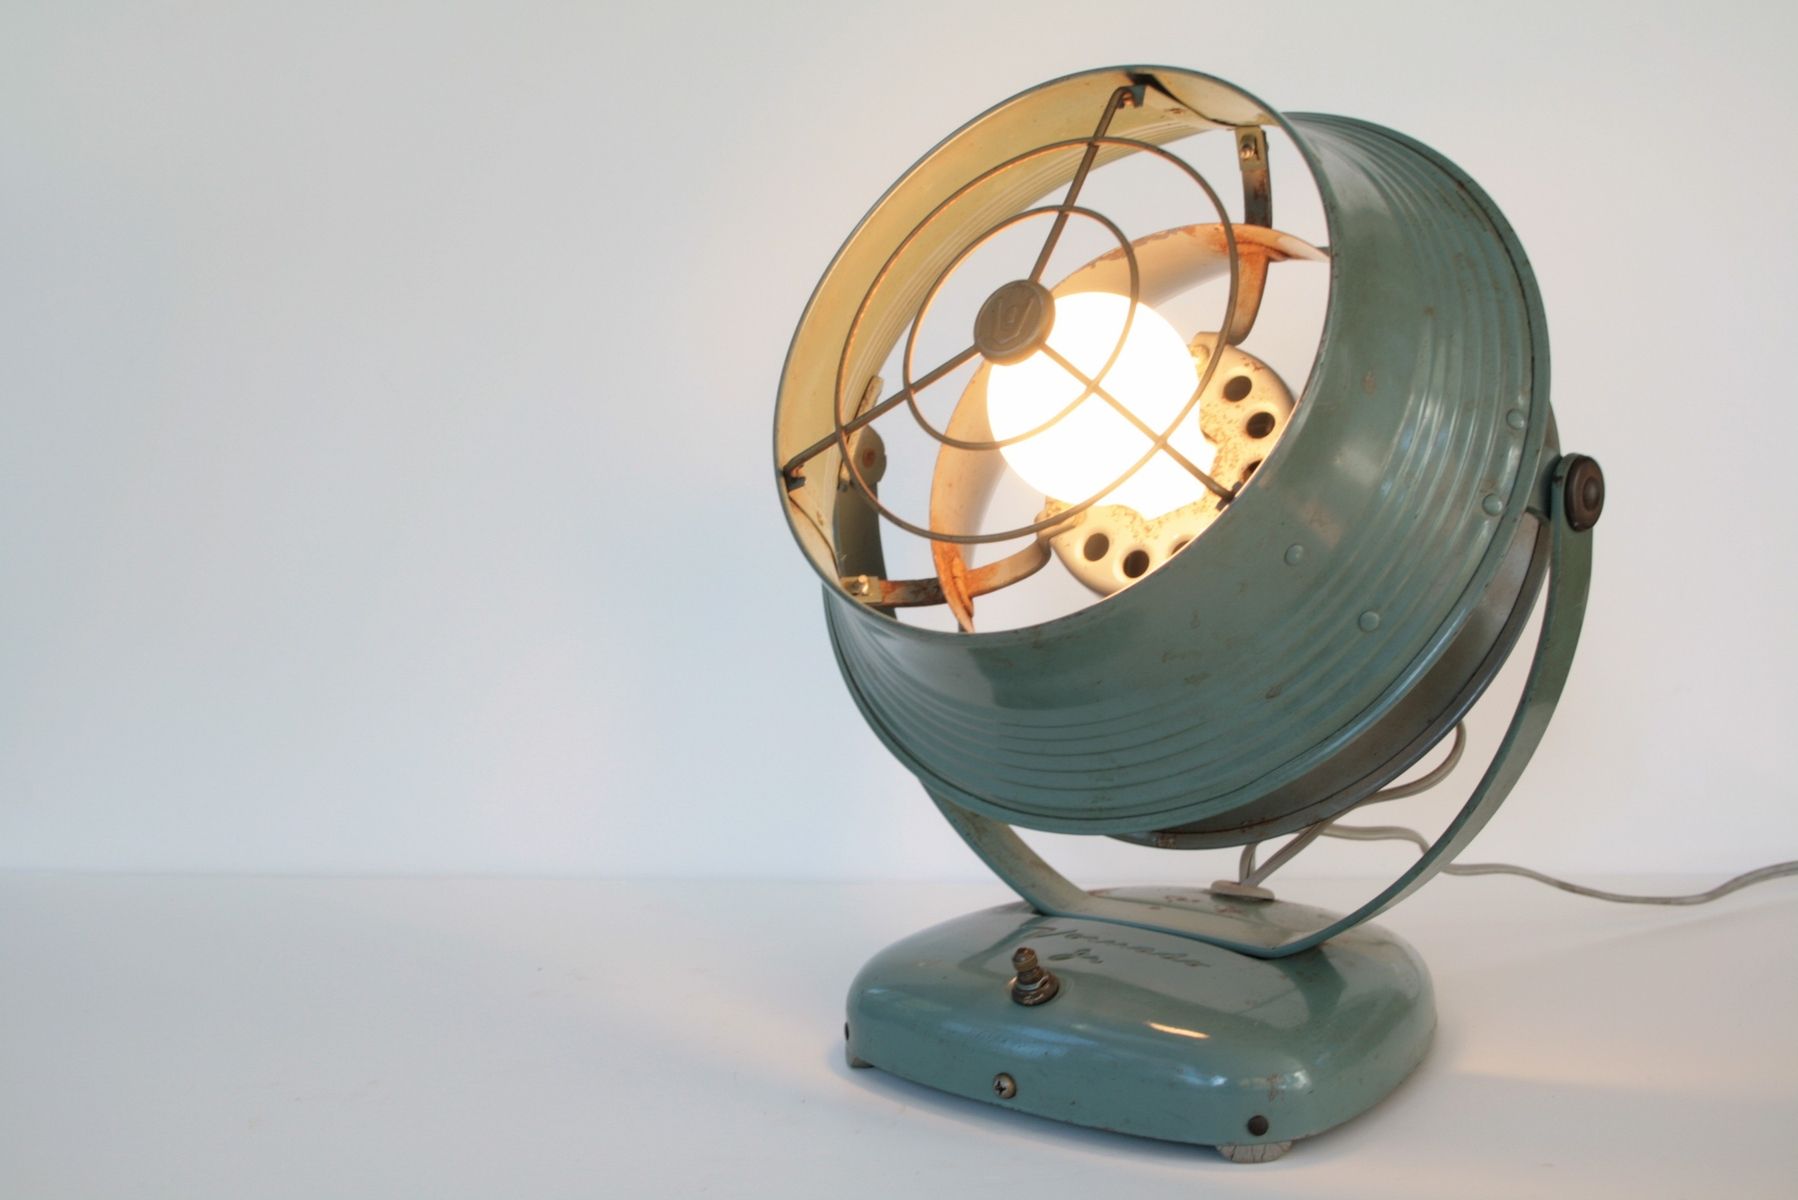 Handmade Vintage Fan Lamp By Tungsten, Vintage Fan Table Lamp